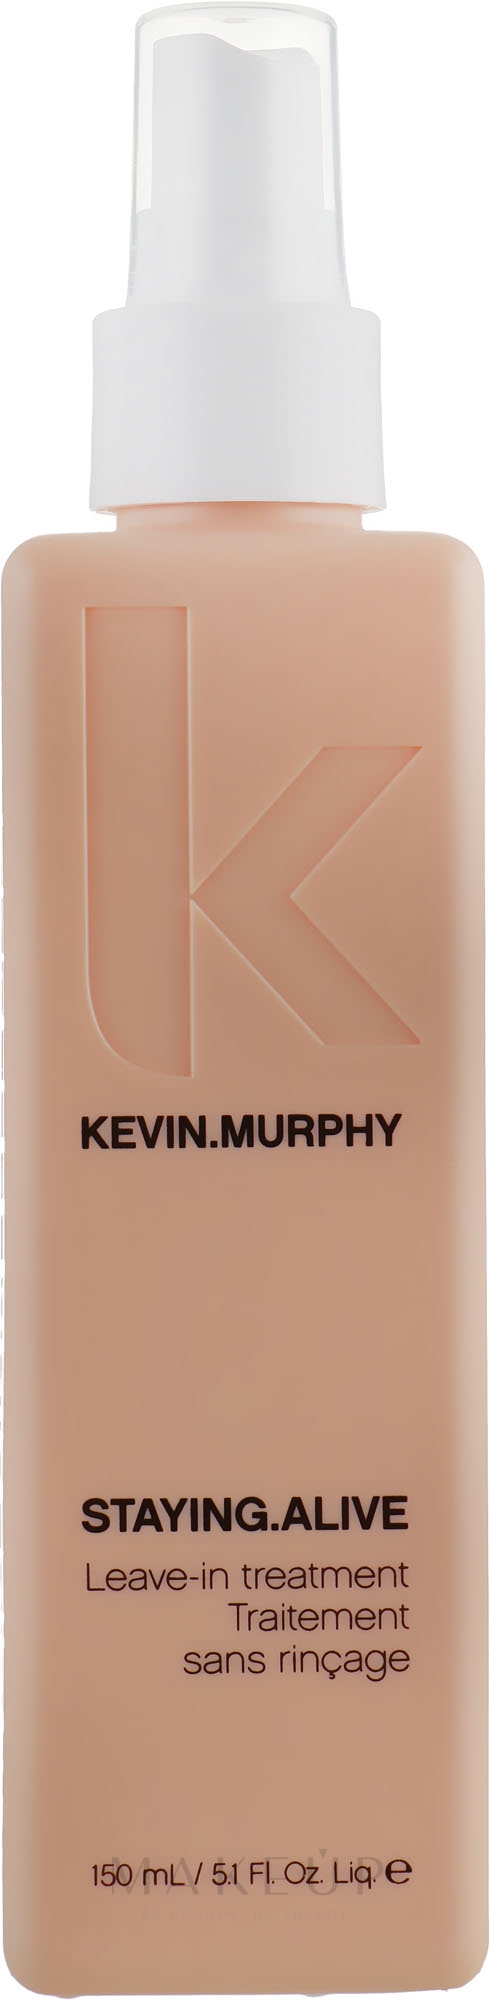 Leave-In-Conditioner zur Stärkung und Regeneration der Haare - Kevin.Murphy Staying.Alive Treatment — Bild 150 ml